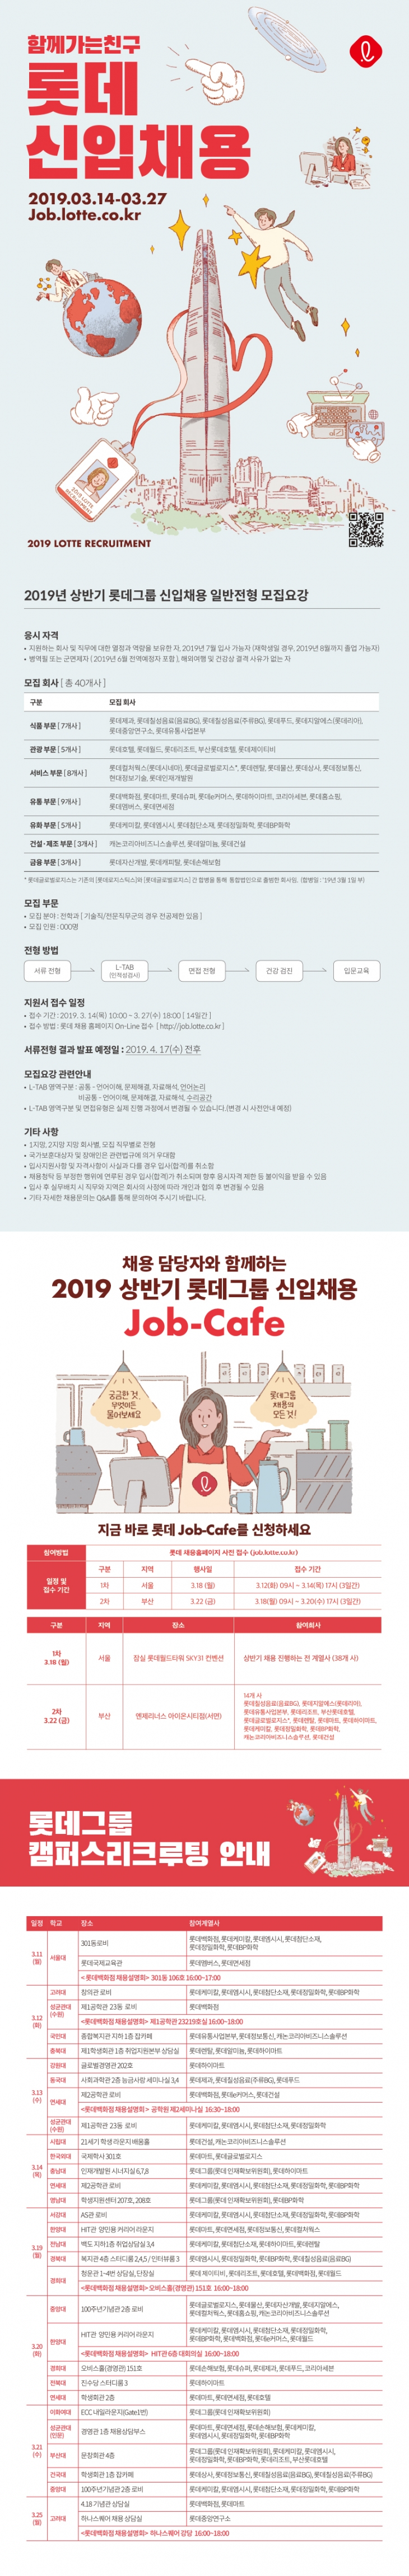 2019 상반기 롯데그룹 신입채용 ~3/27